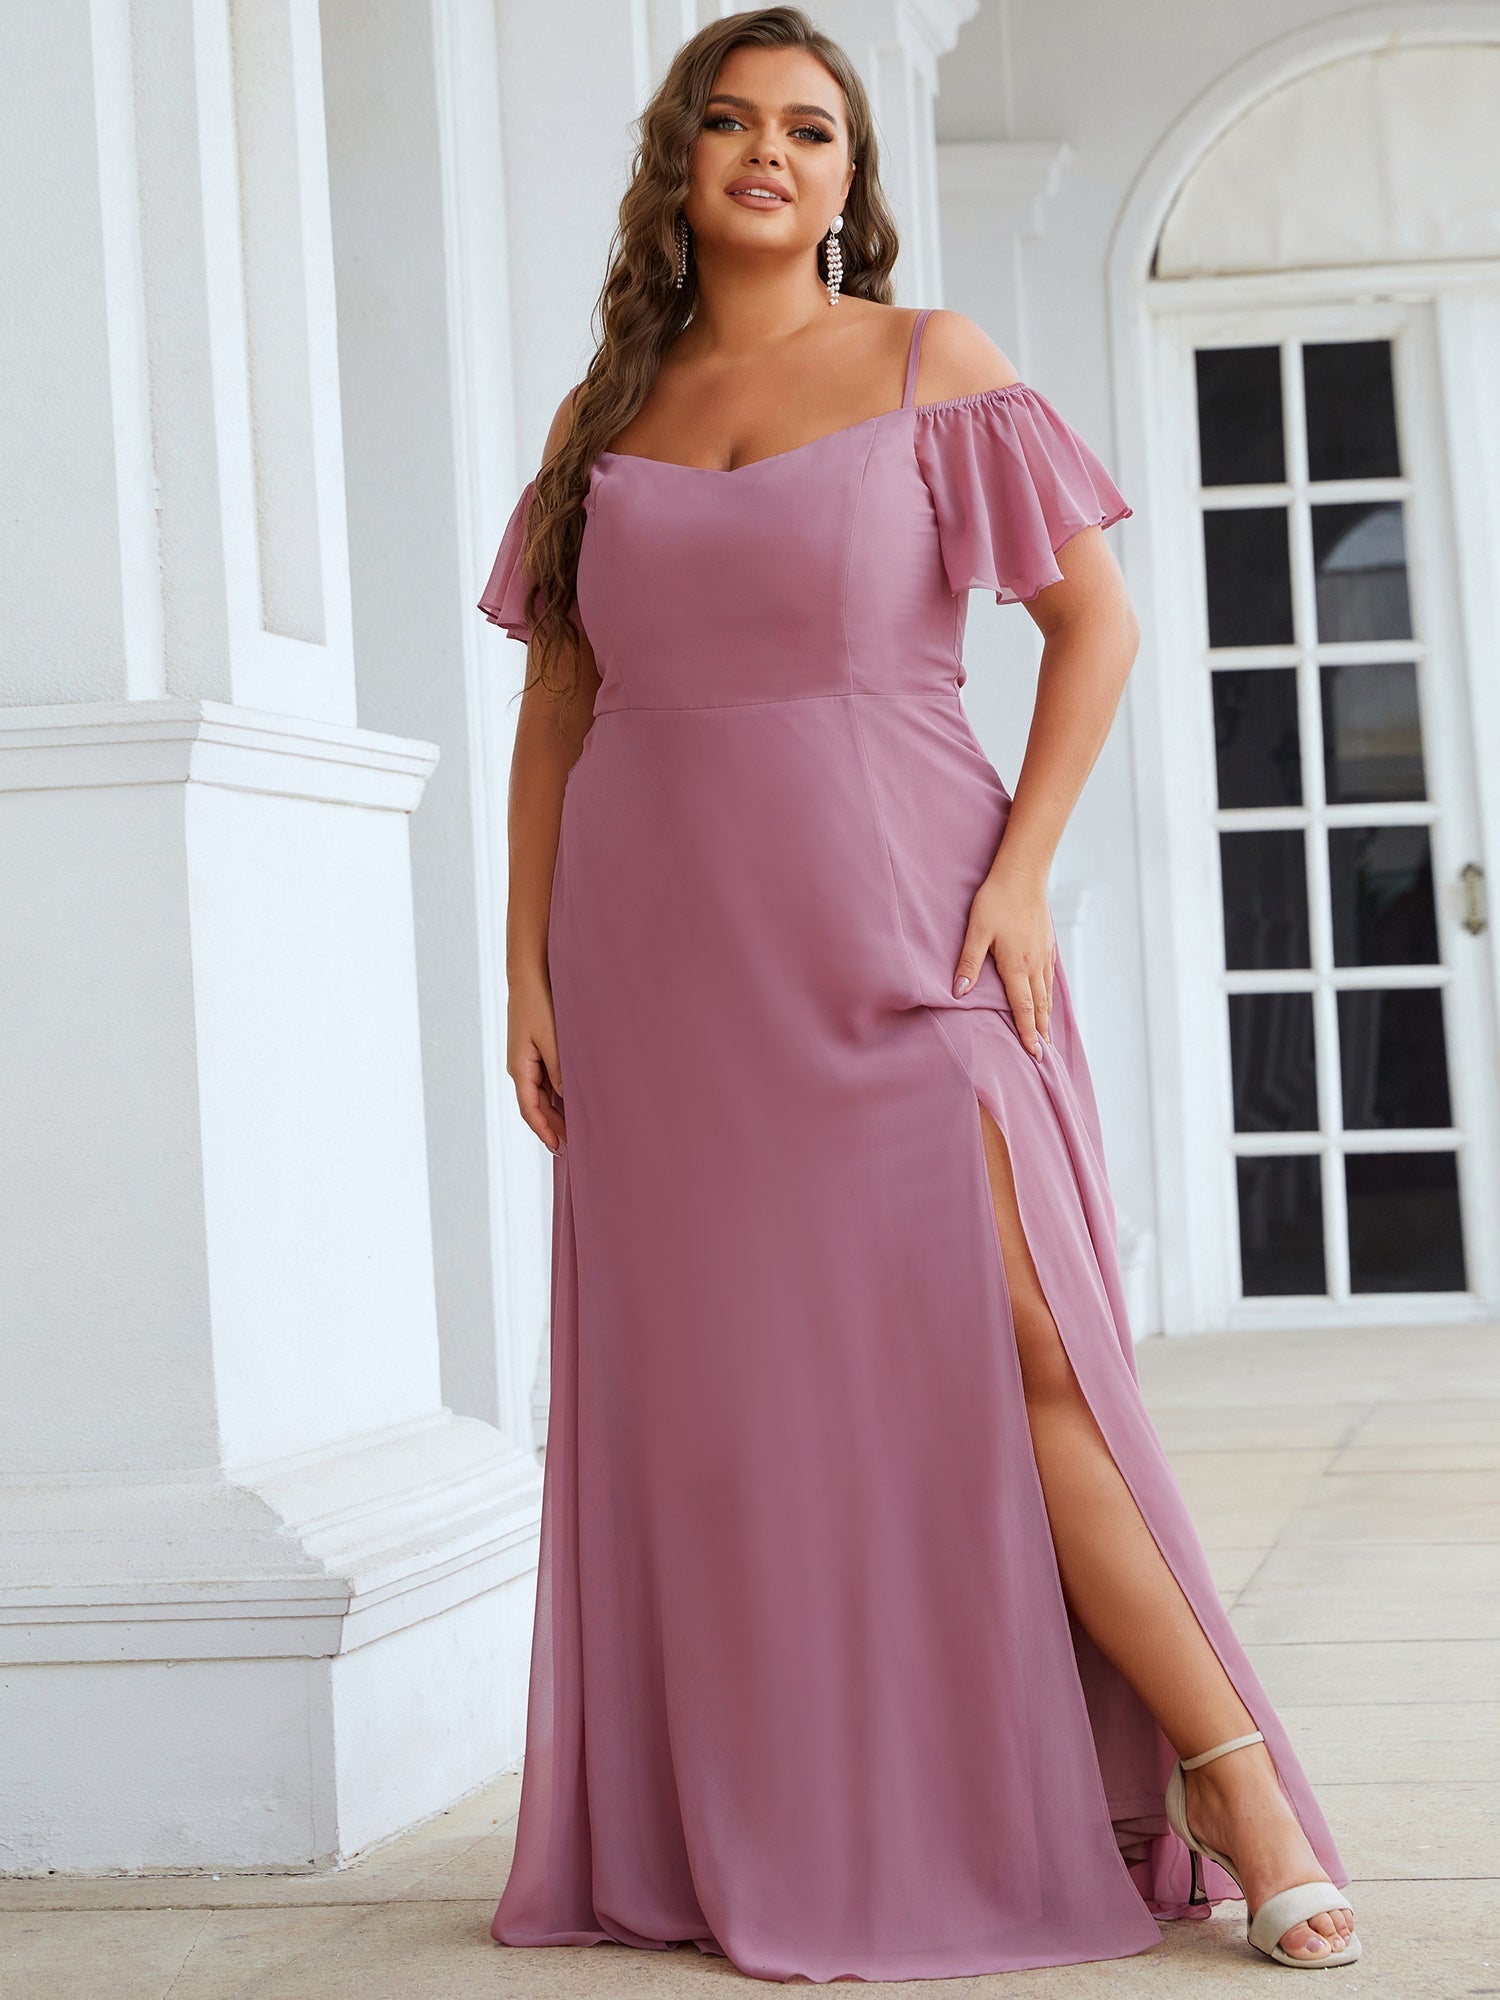 Custom Size Plain Solid Color Plus Size Wholesale Chiffon Bridesmaid Dress